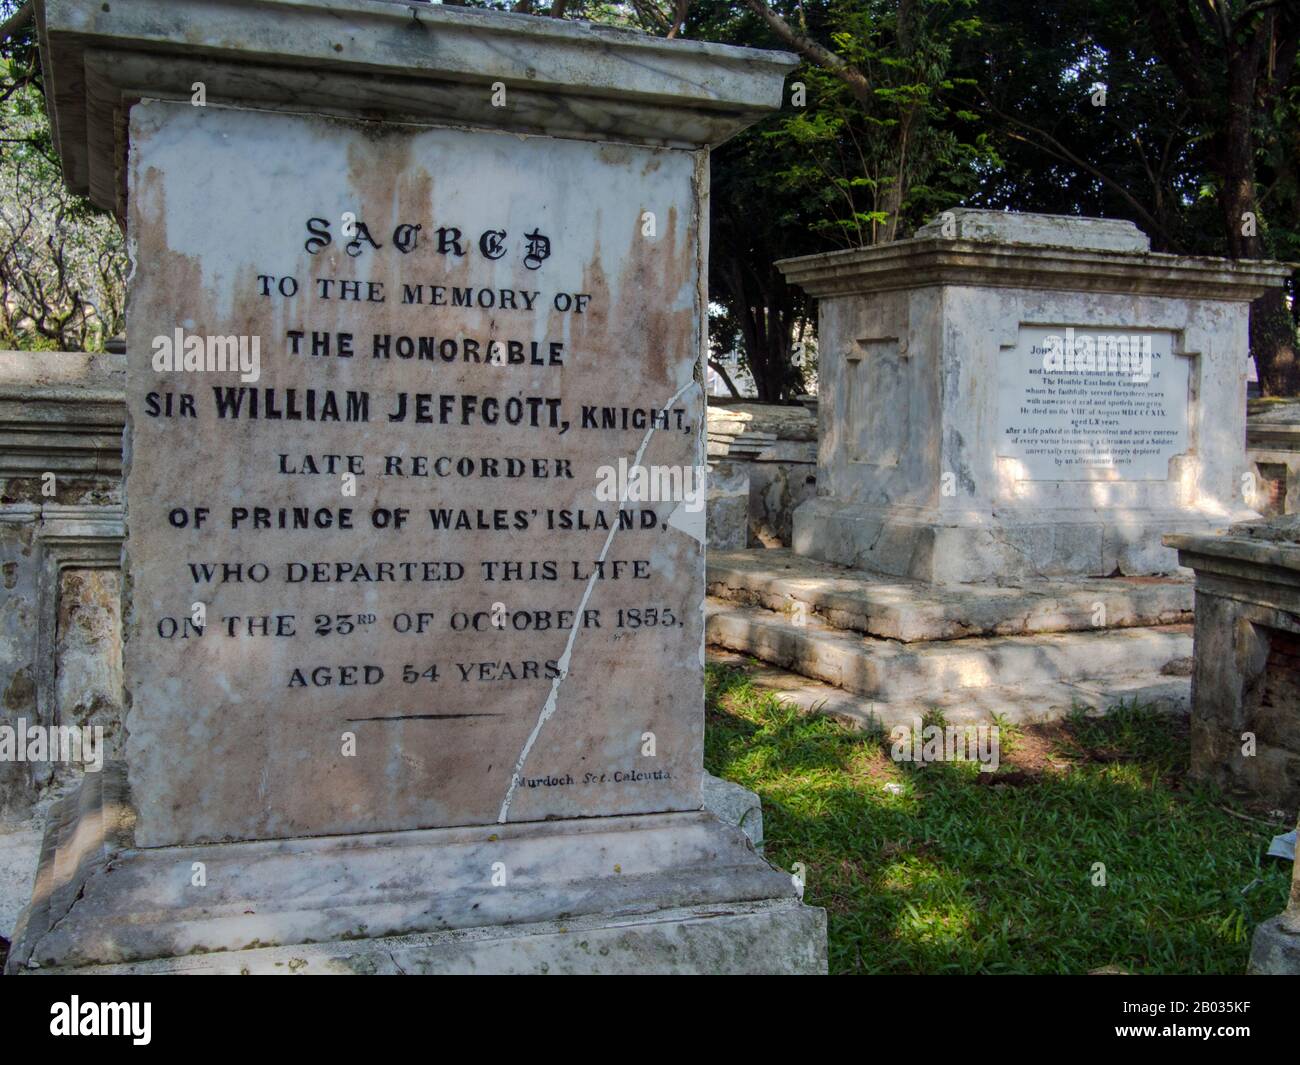 Sir William Jeffcott (Dublino, 1800 – 1855) è stato un giudice. Nel 1849 fu nominato registratore di Singapore e Malacca (Melaka). Nell'ottobre 1855 fu nominato giudice a Bombay, ma morì prima di ricevere la notifica. Il colonnello John Alexander Bannerman (5 giugno 1759 – 8 agosto 1819) fu nominato Governatore dell'Isola del Principe di Galles (Isola di Penang, Malesia) e della Provincia Wellesley (Seberang Perai) (entrambi costituenti l'insediamento di Penang) nel 1817 ed anche Tesoriere dal 1818. Foto Stock